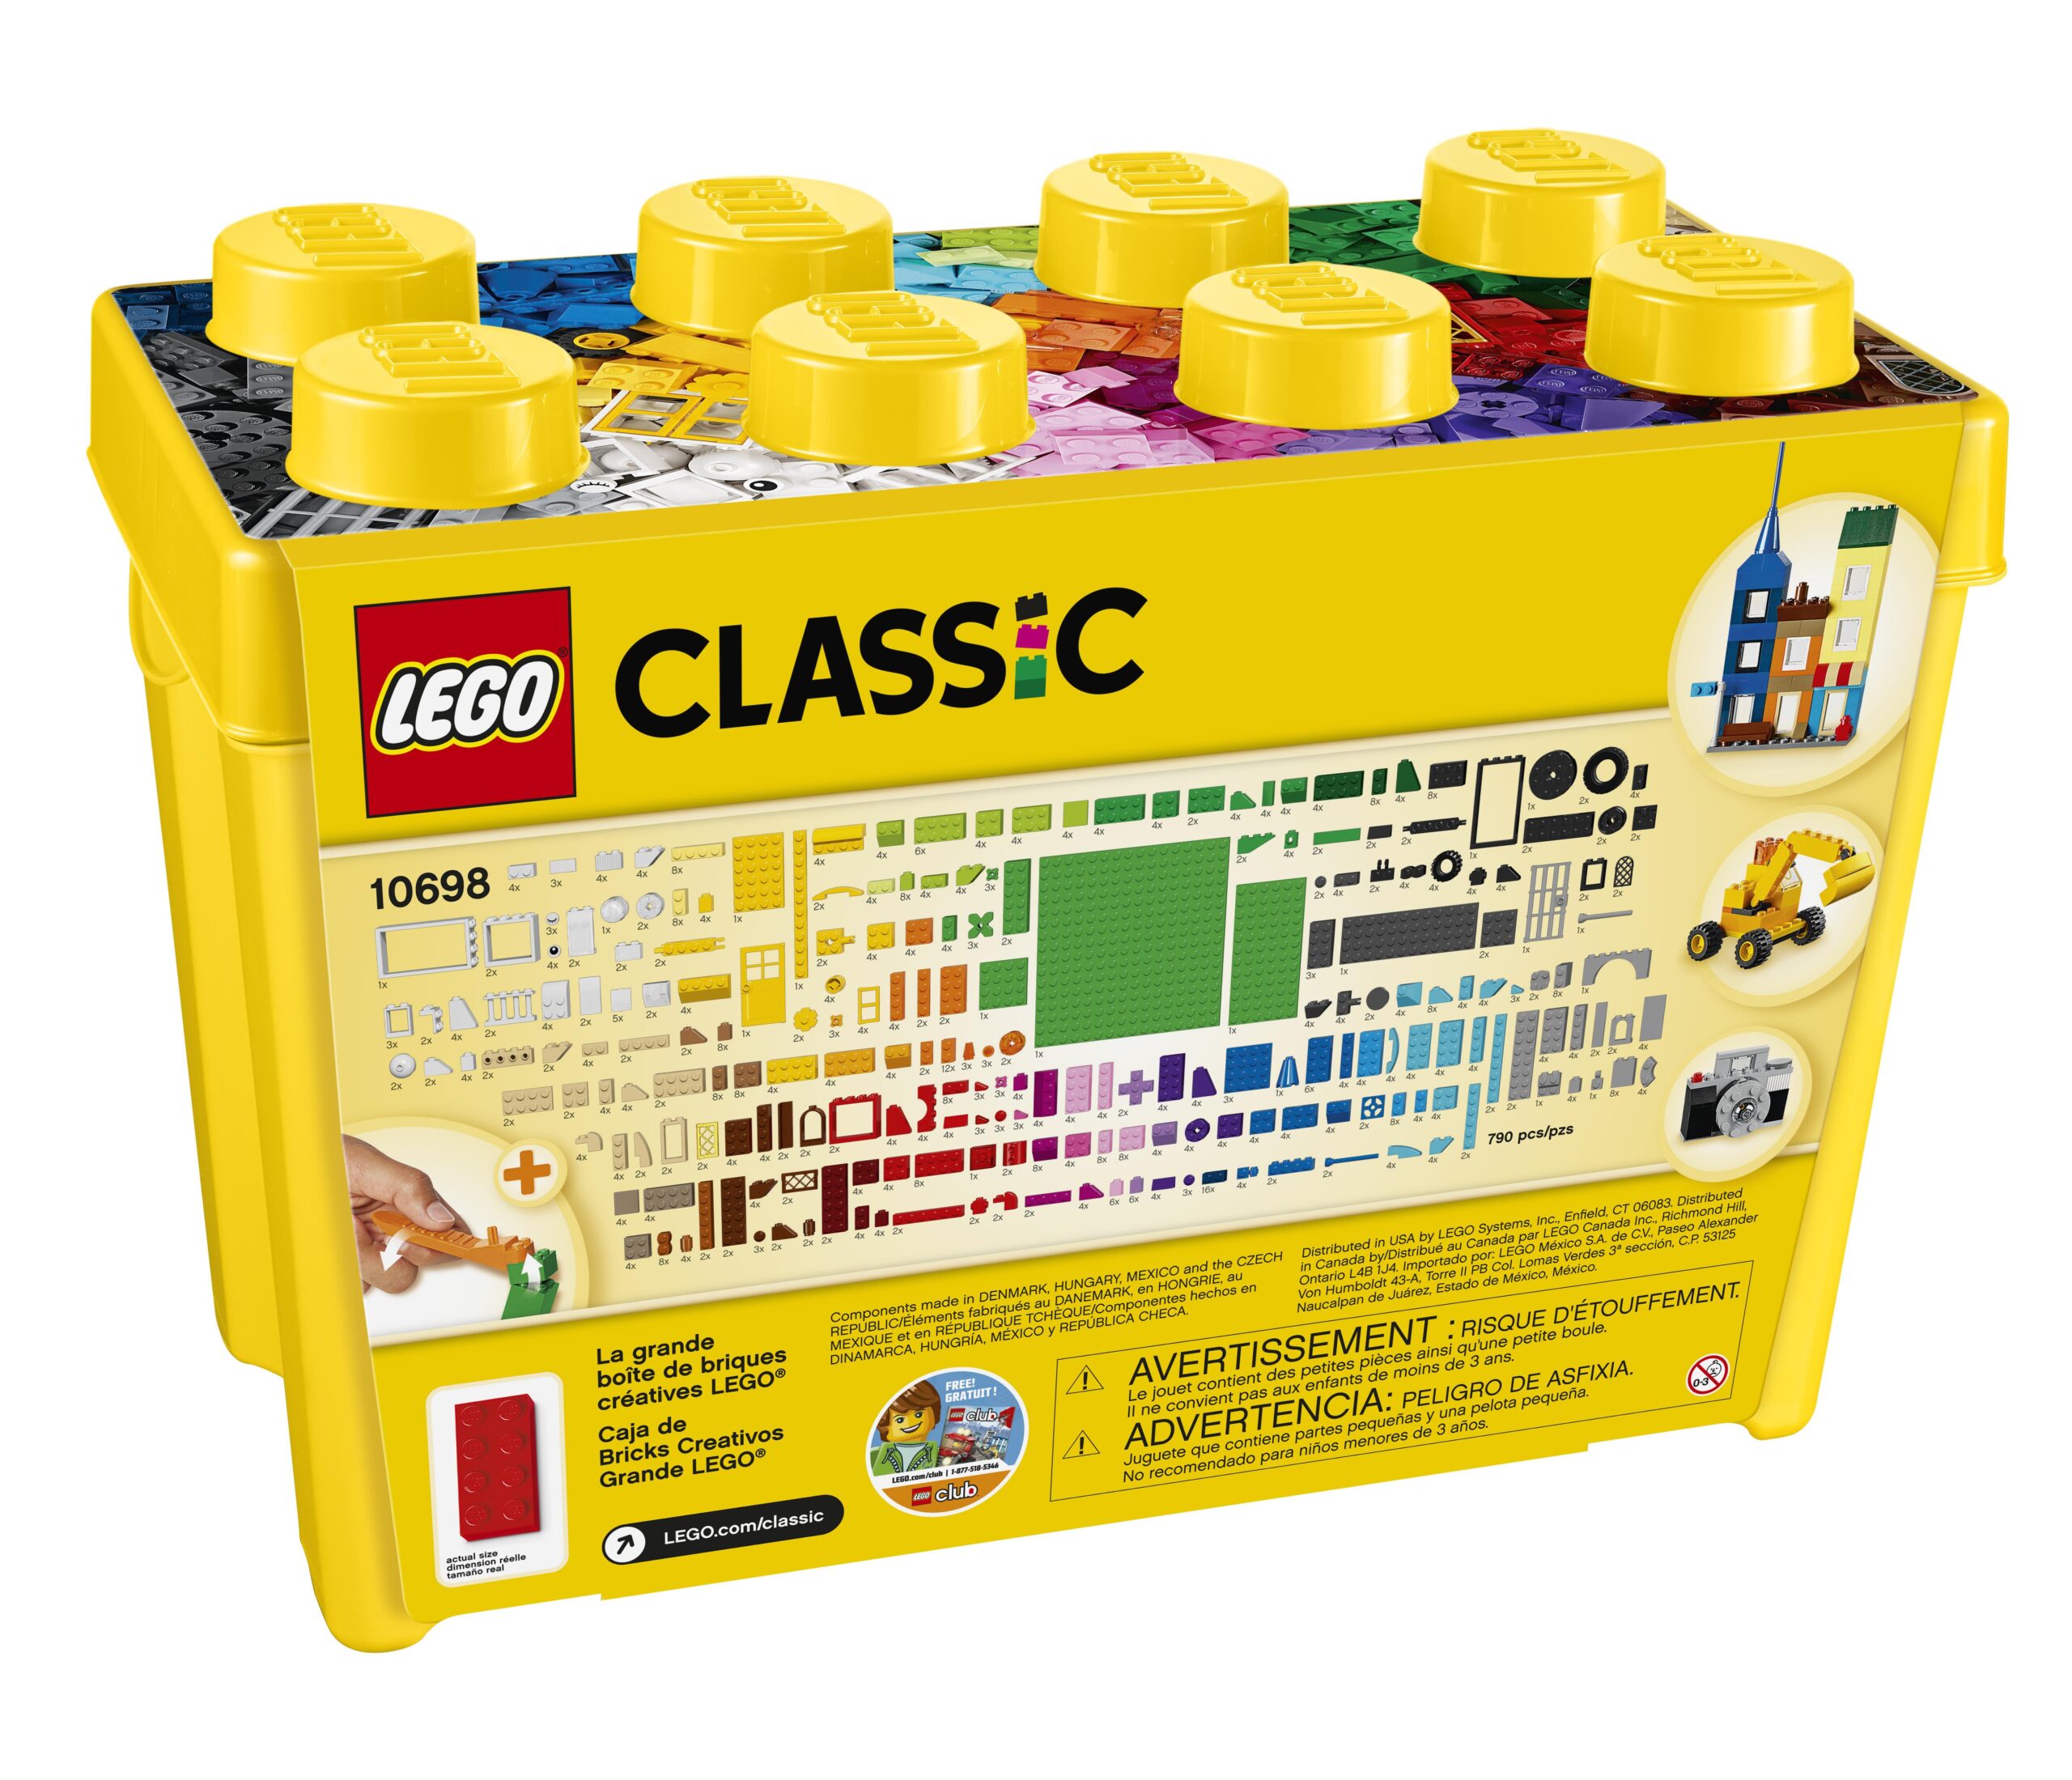 LEGO Classic 10698 Scatola Mattoncini Creativi Grande per Costruire Macchina  Fotografica, Vespa e Ruspa Giocattolo - Toys Center